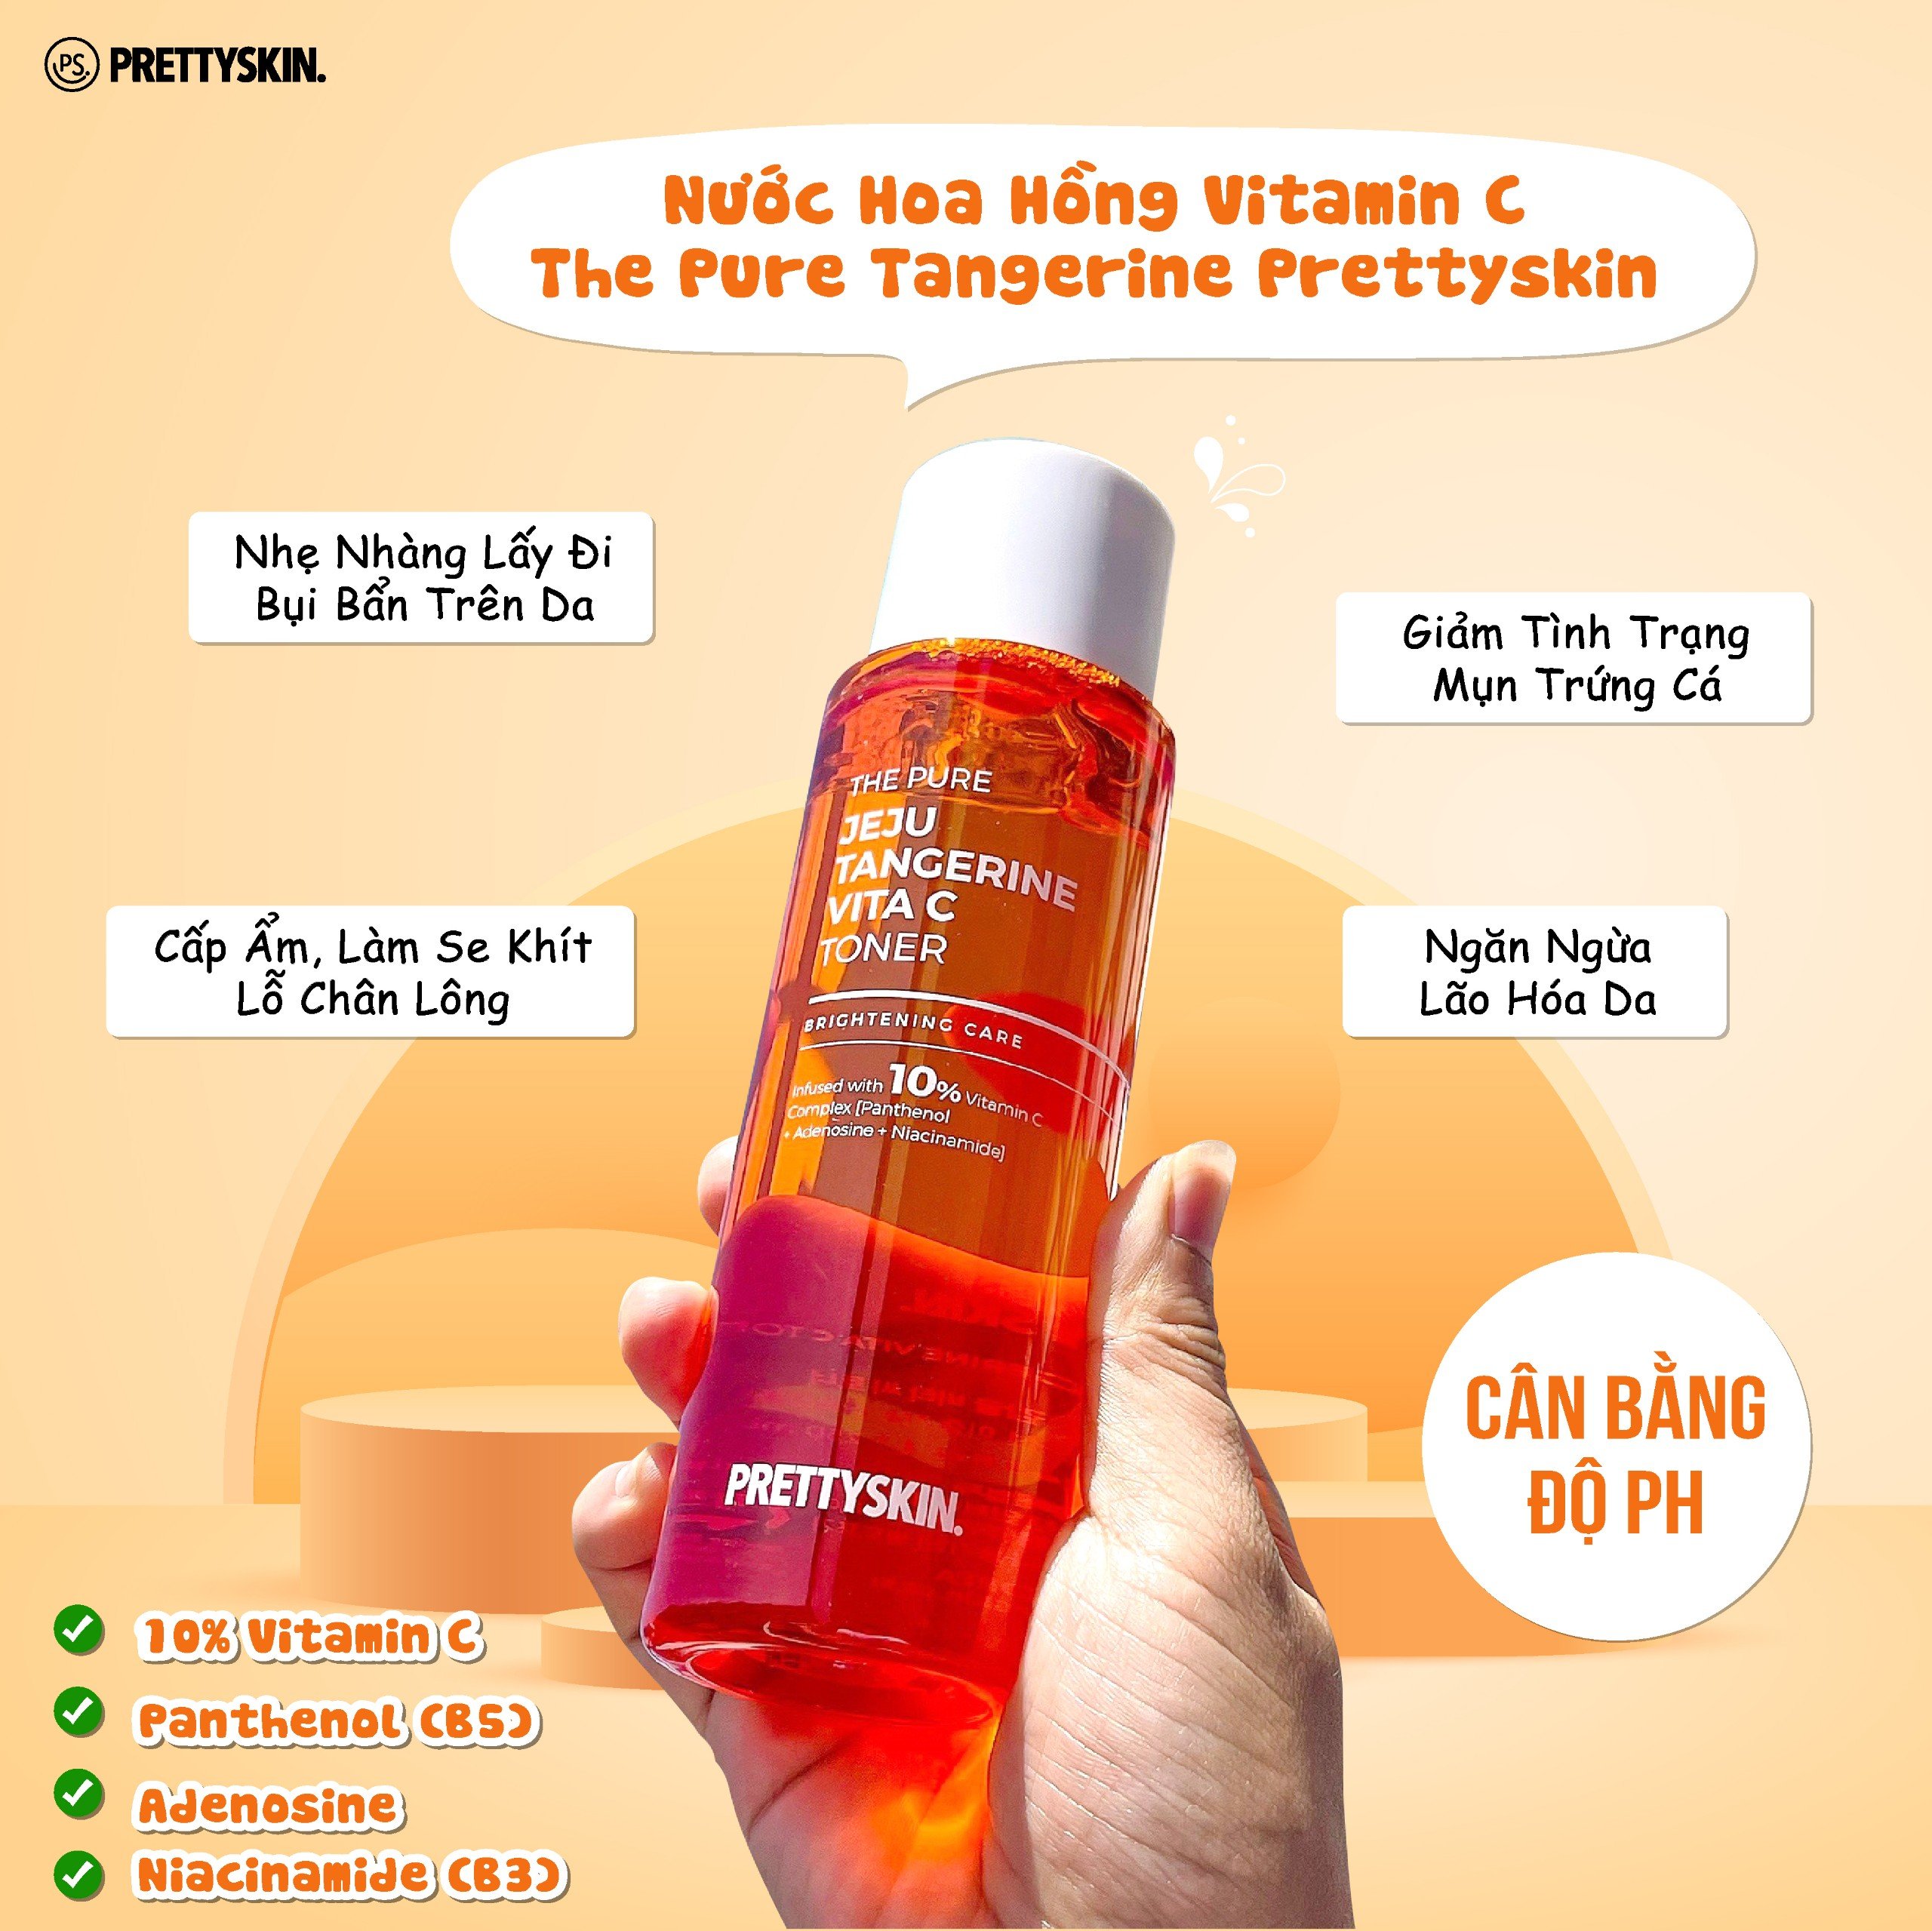 Nước hoa hồng dưỡng trắng, phục hồi da Vitamin C Prettyskin, Toner Pretty Skin The Pure Jeju Tangerine cấp ẩm làm dịu